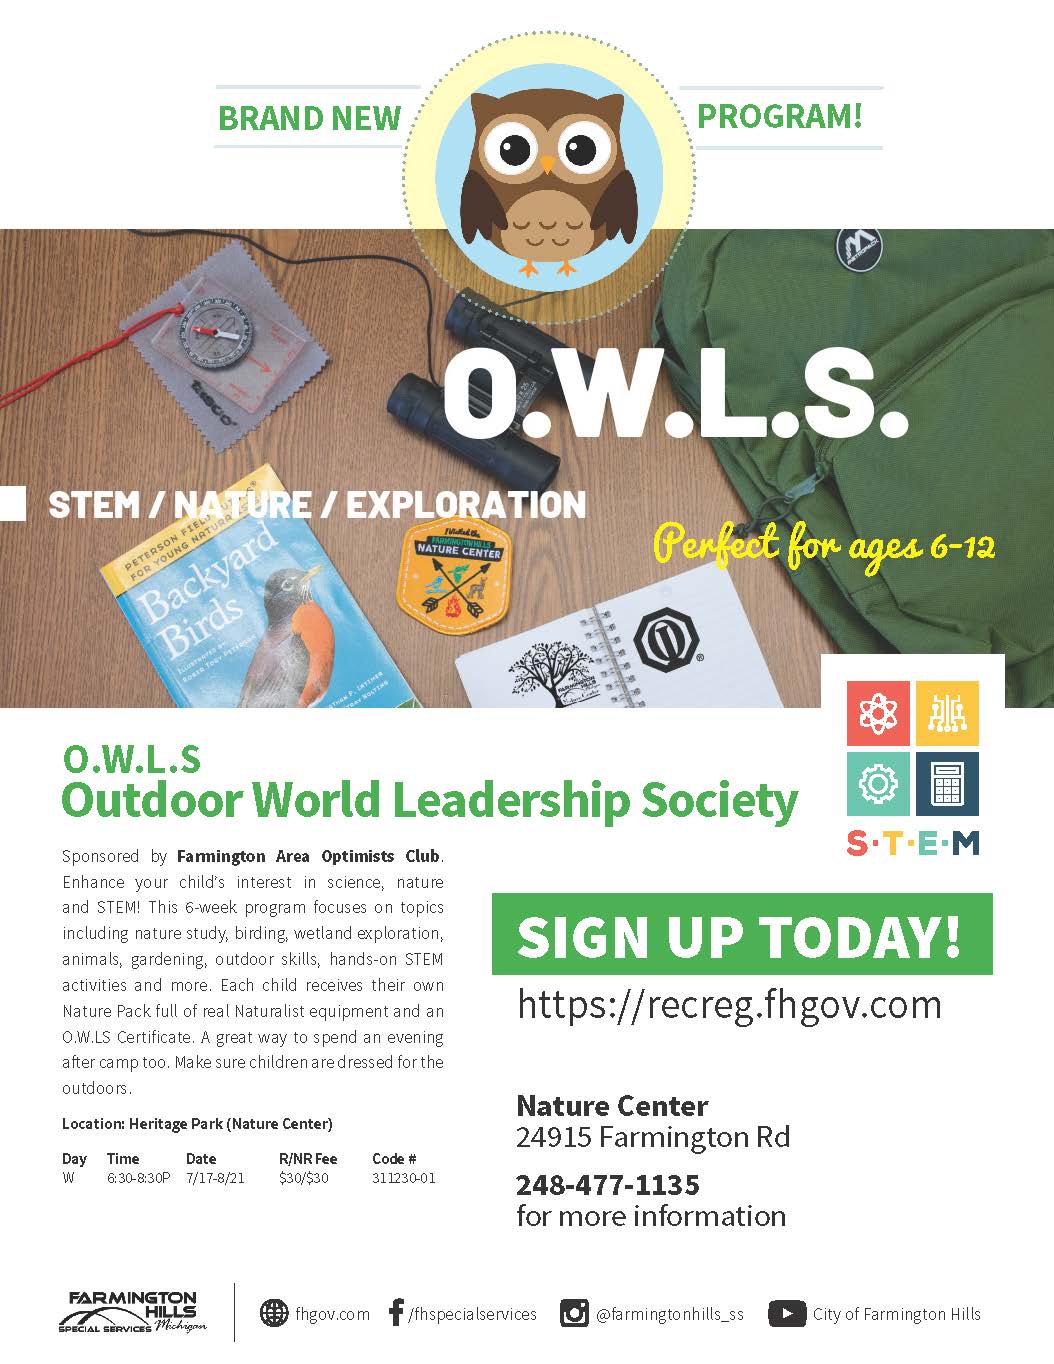 OWLS Summer 2019